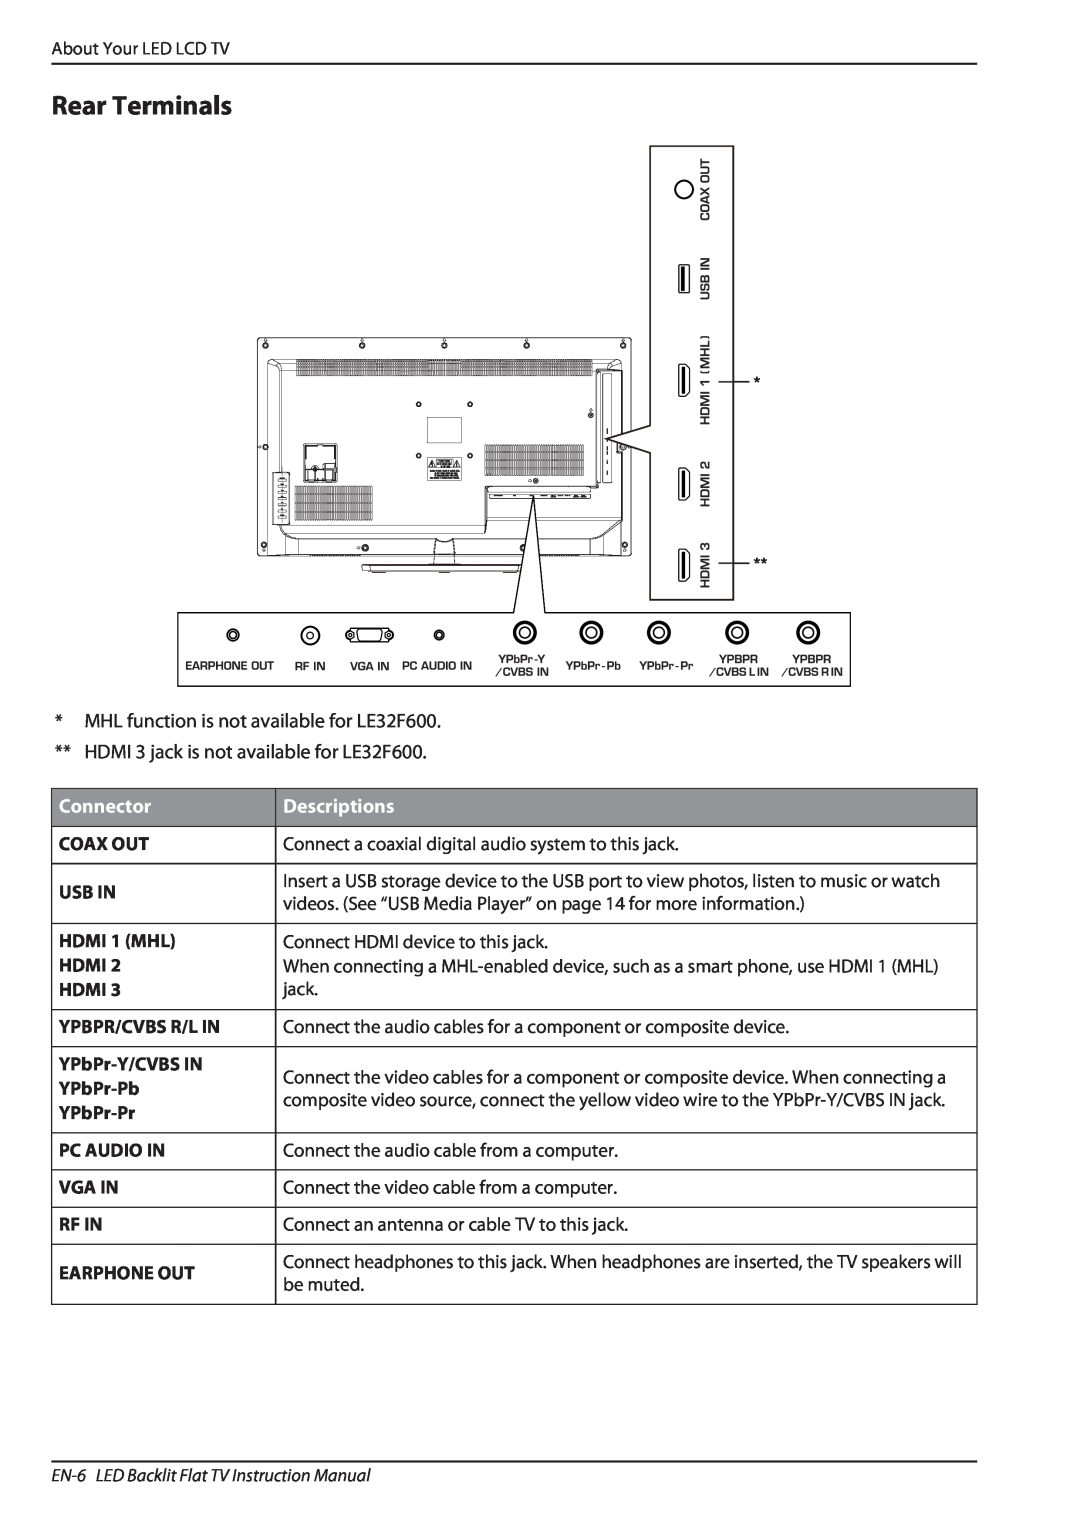 Haier LE32A650, LE32F600 owner manual Rear Terminals, Connector, Descriptions 